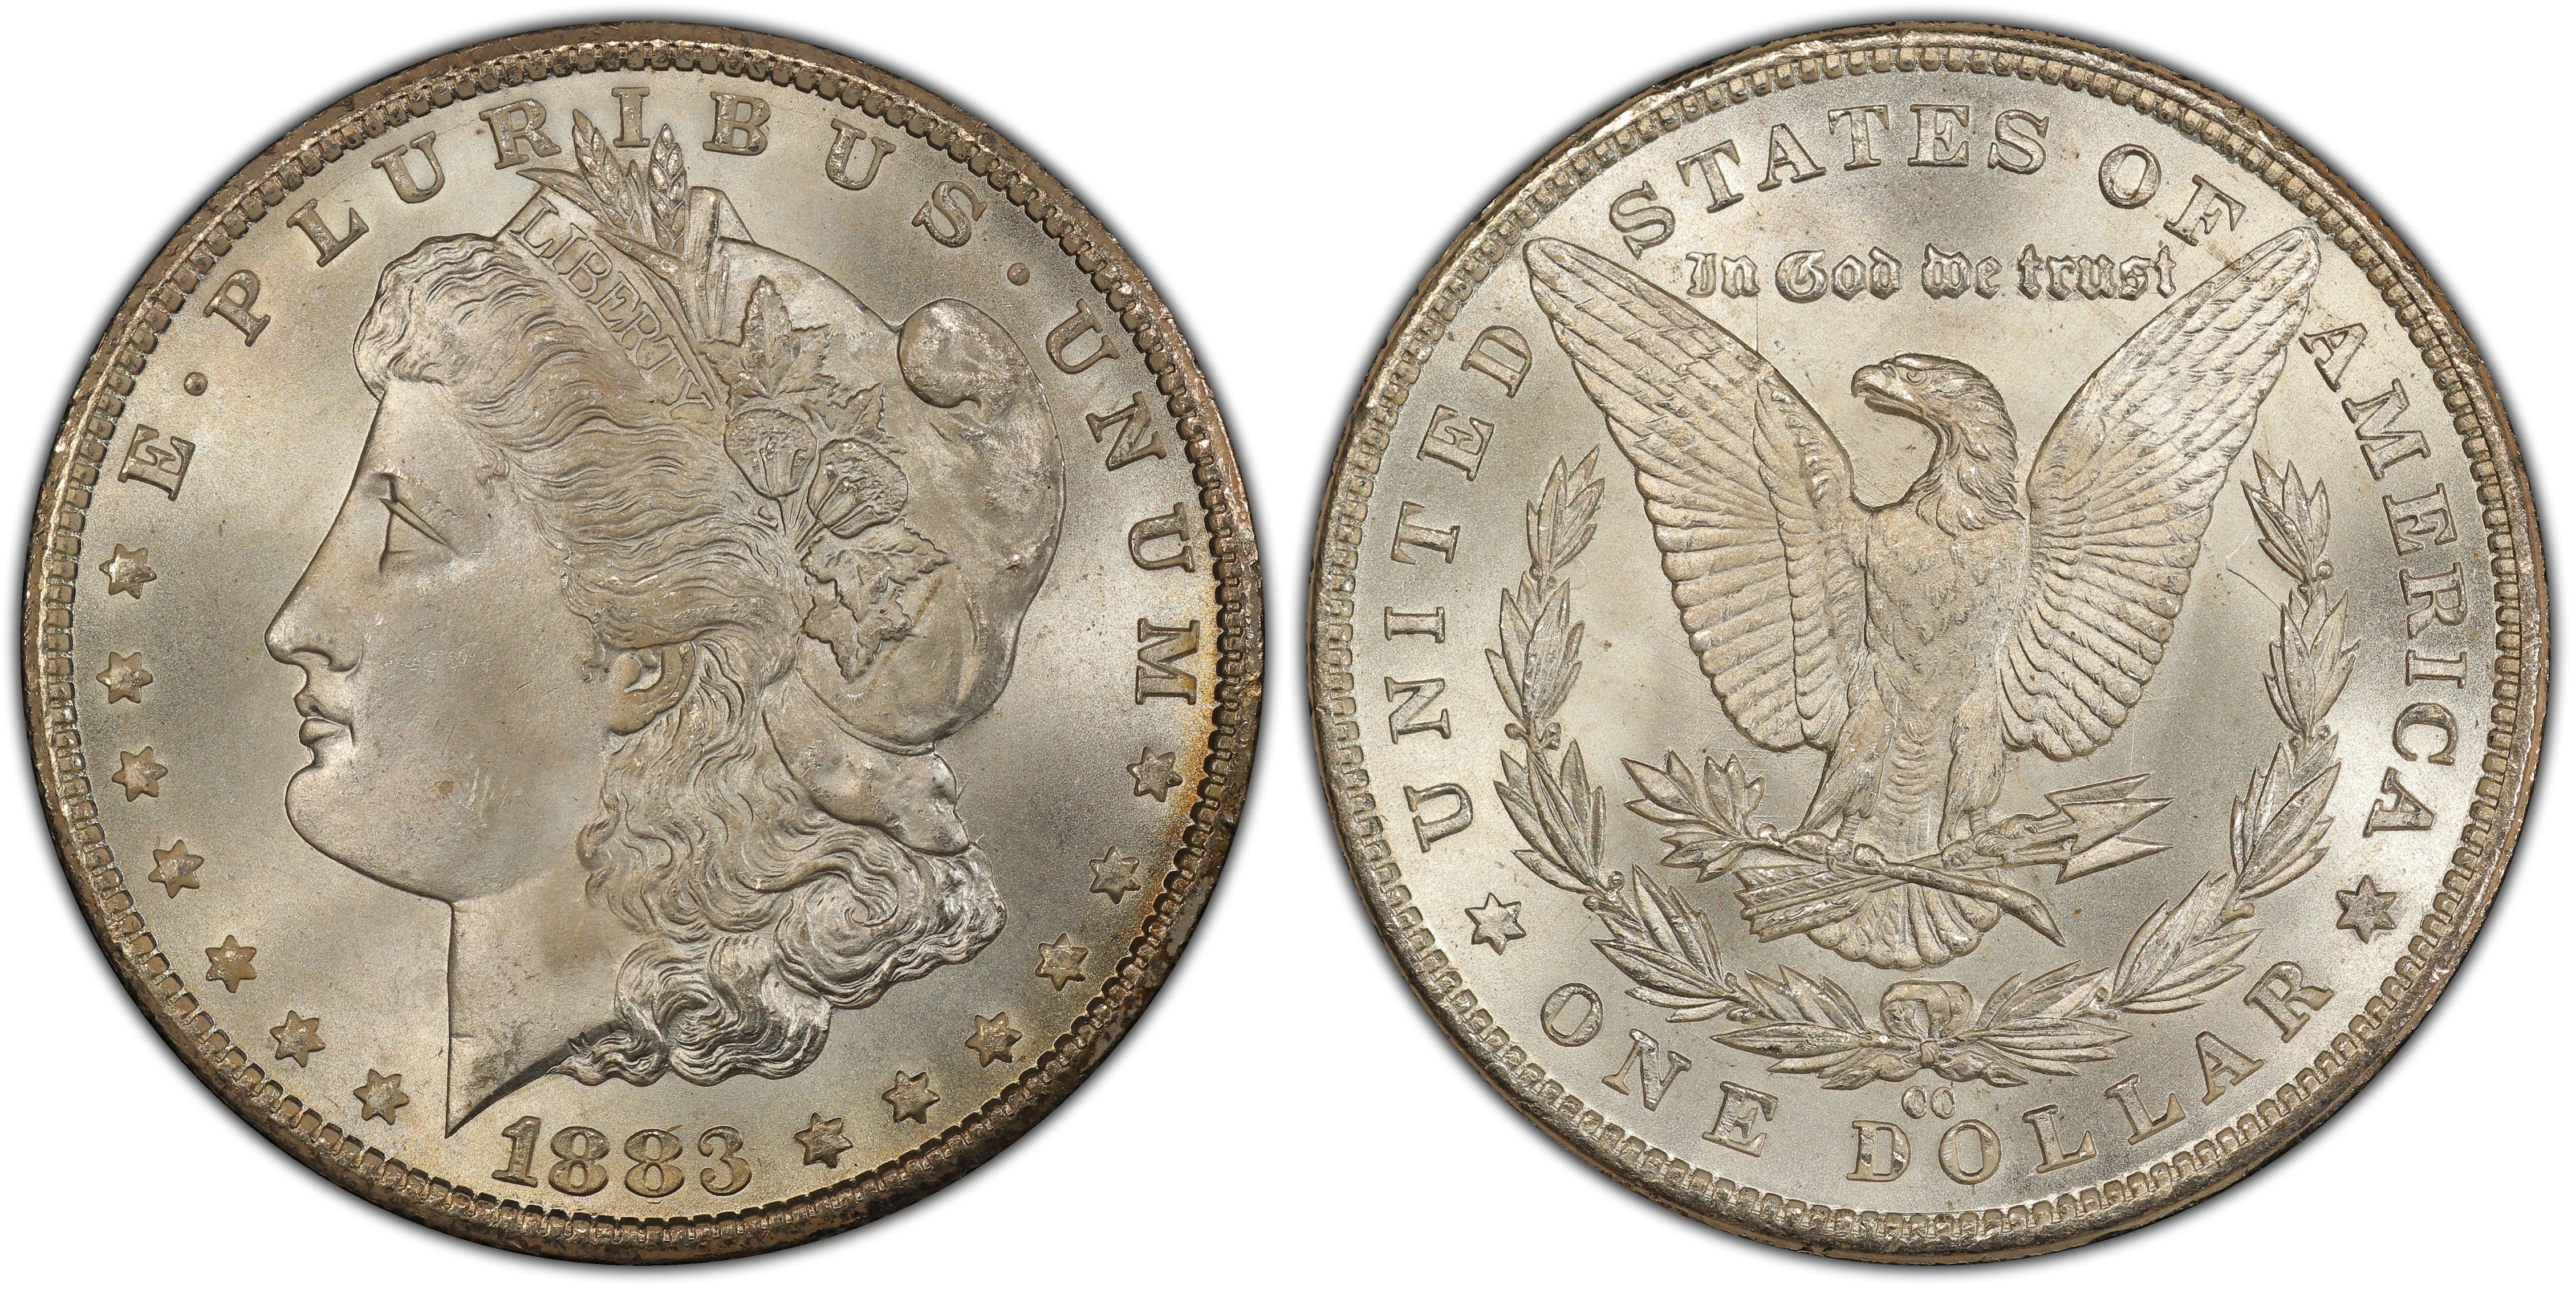 CC GSA Black Box Morgan Silver Dollar $ 1883-CC COA No Carson City Coin 